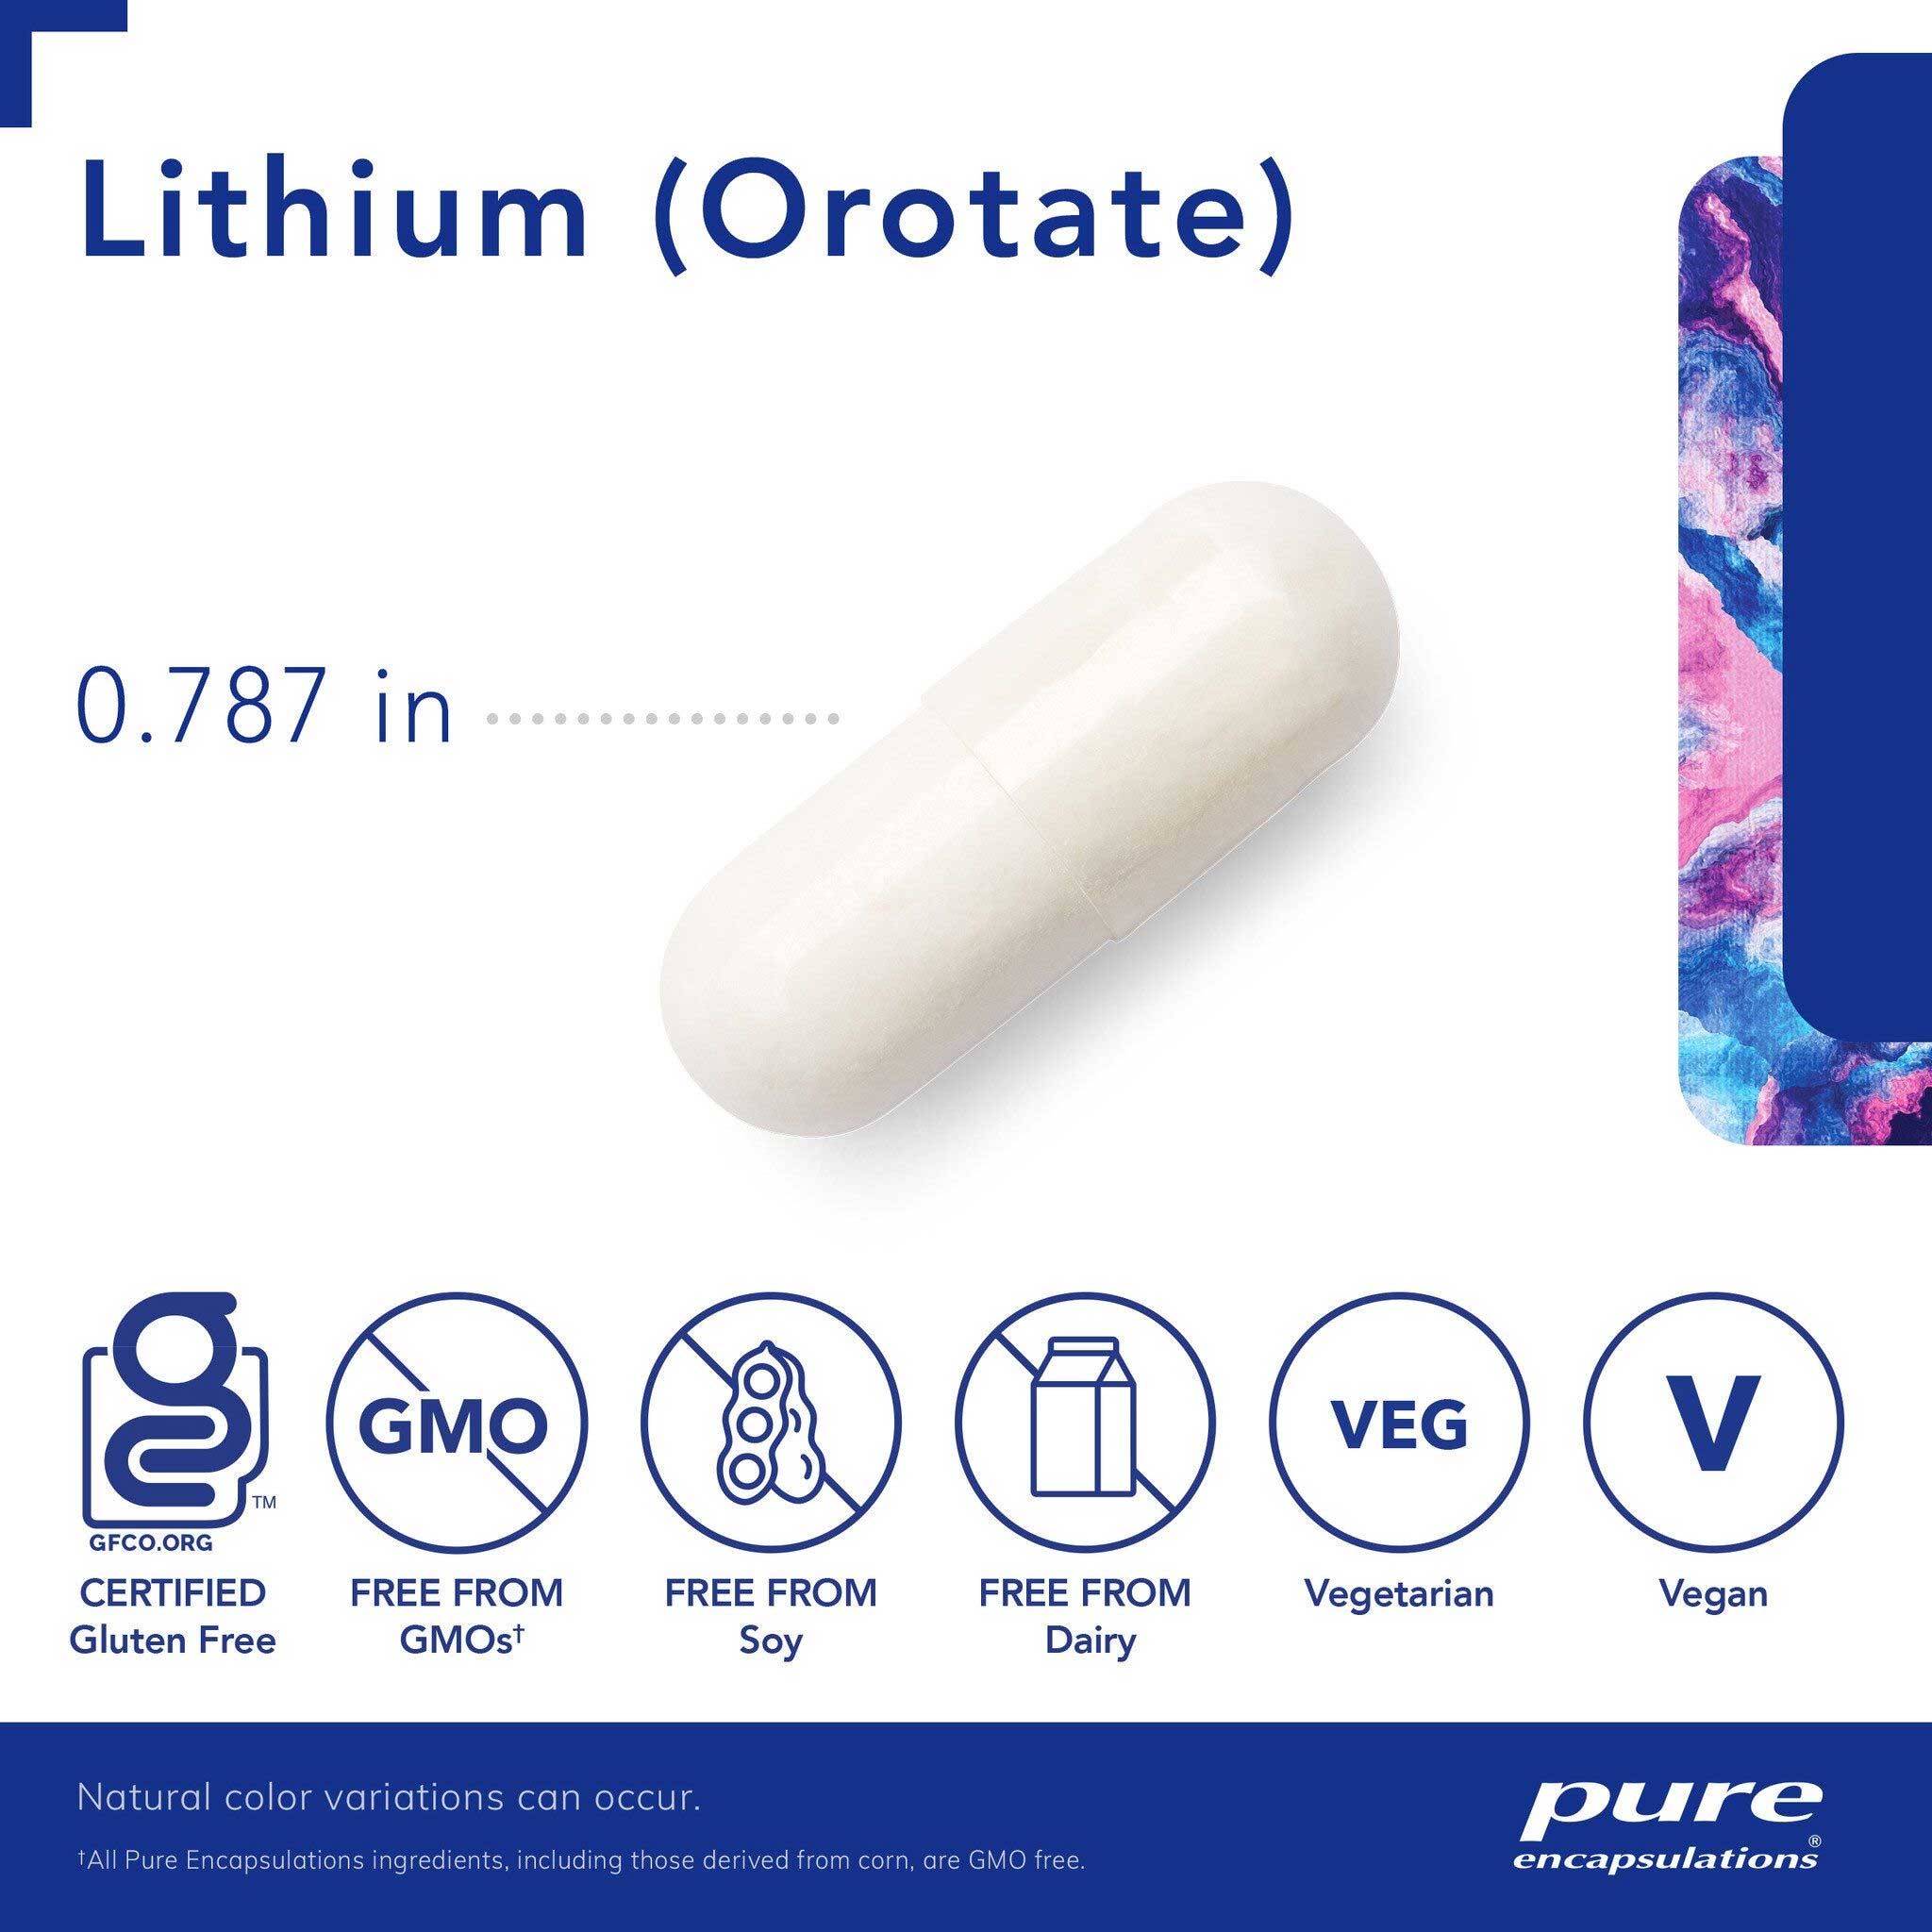 Pure Encapsulations Lithium (Orotate) 5 mg Capsules